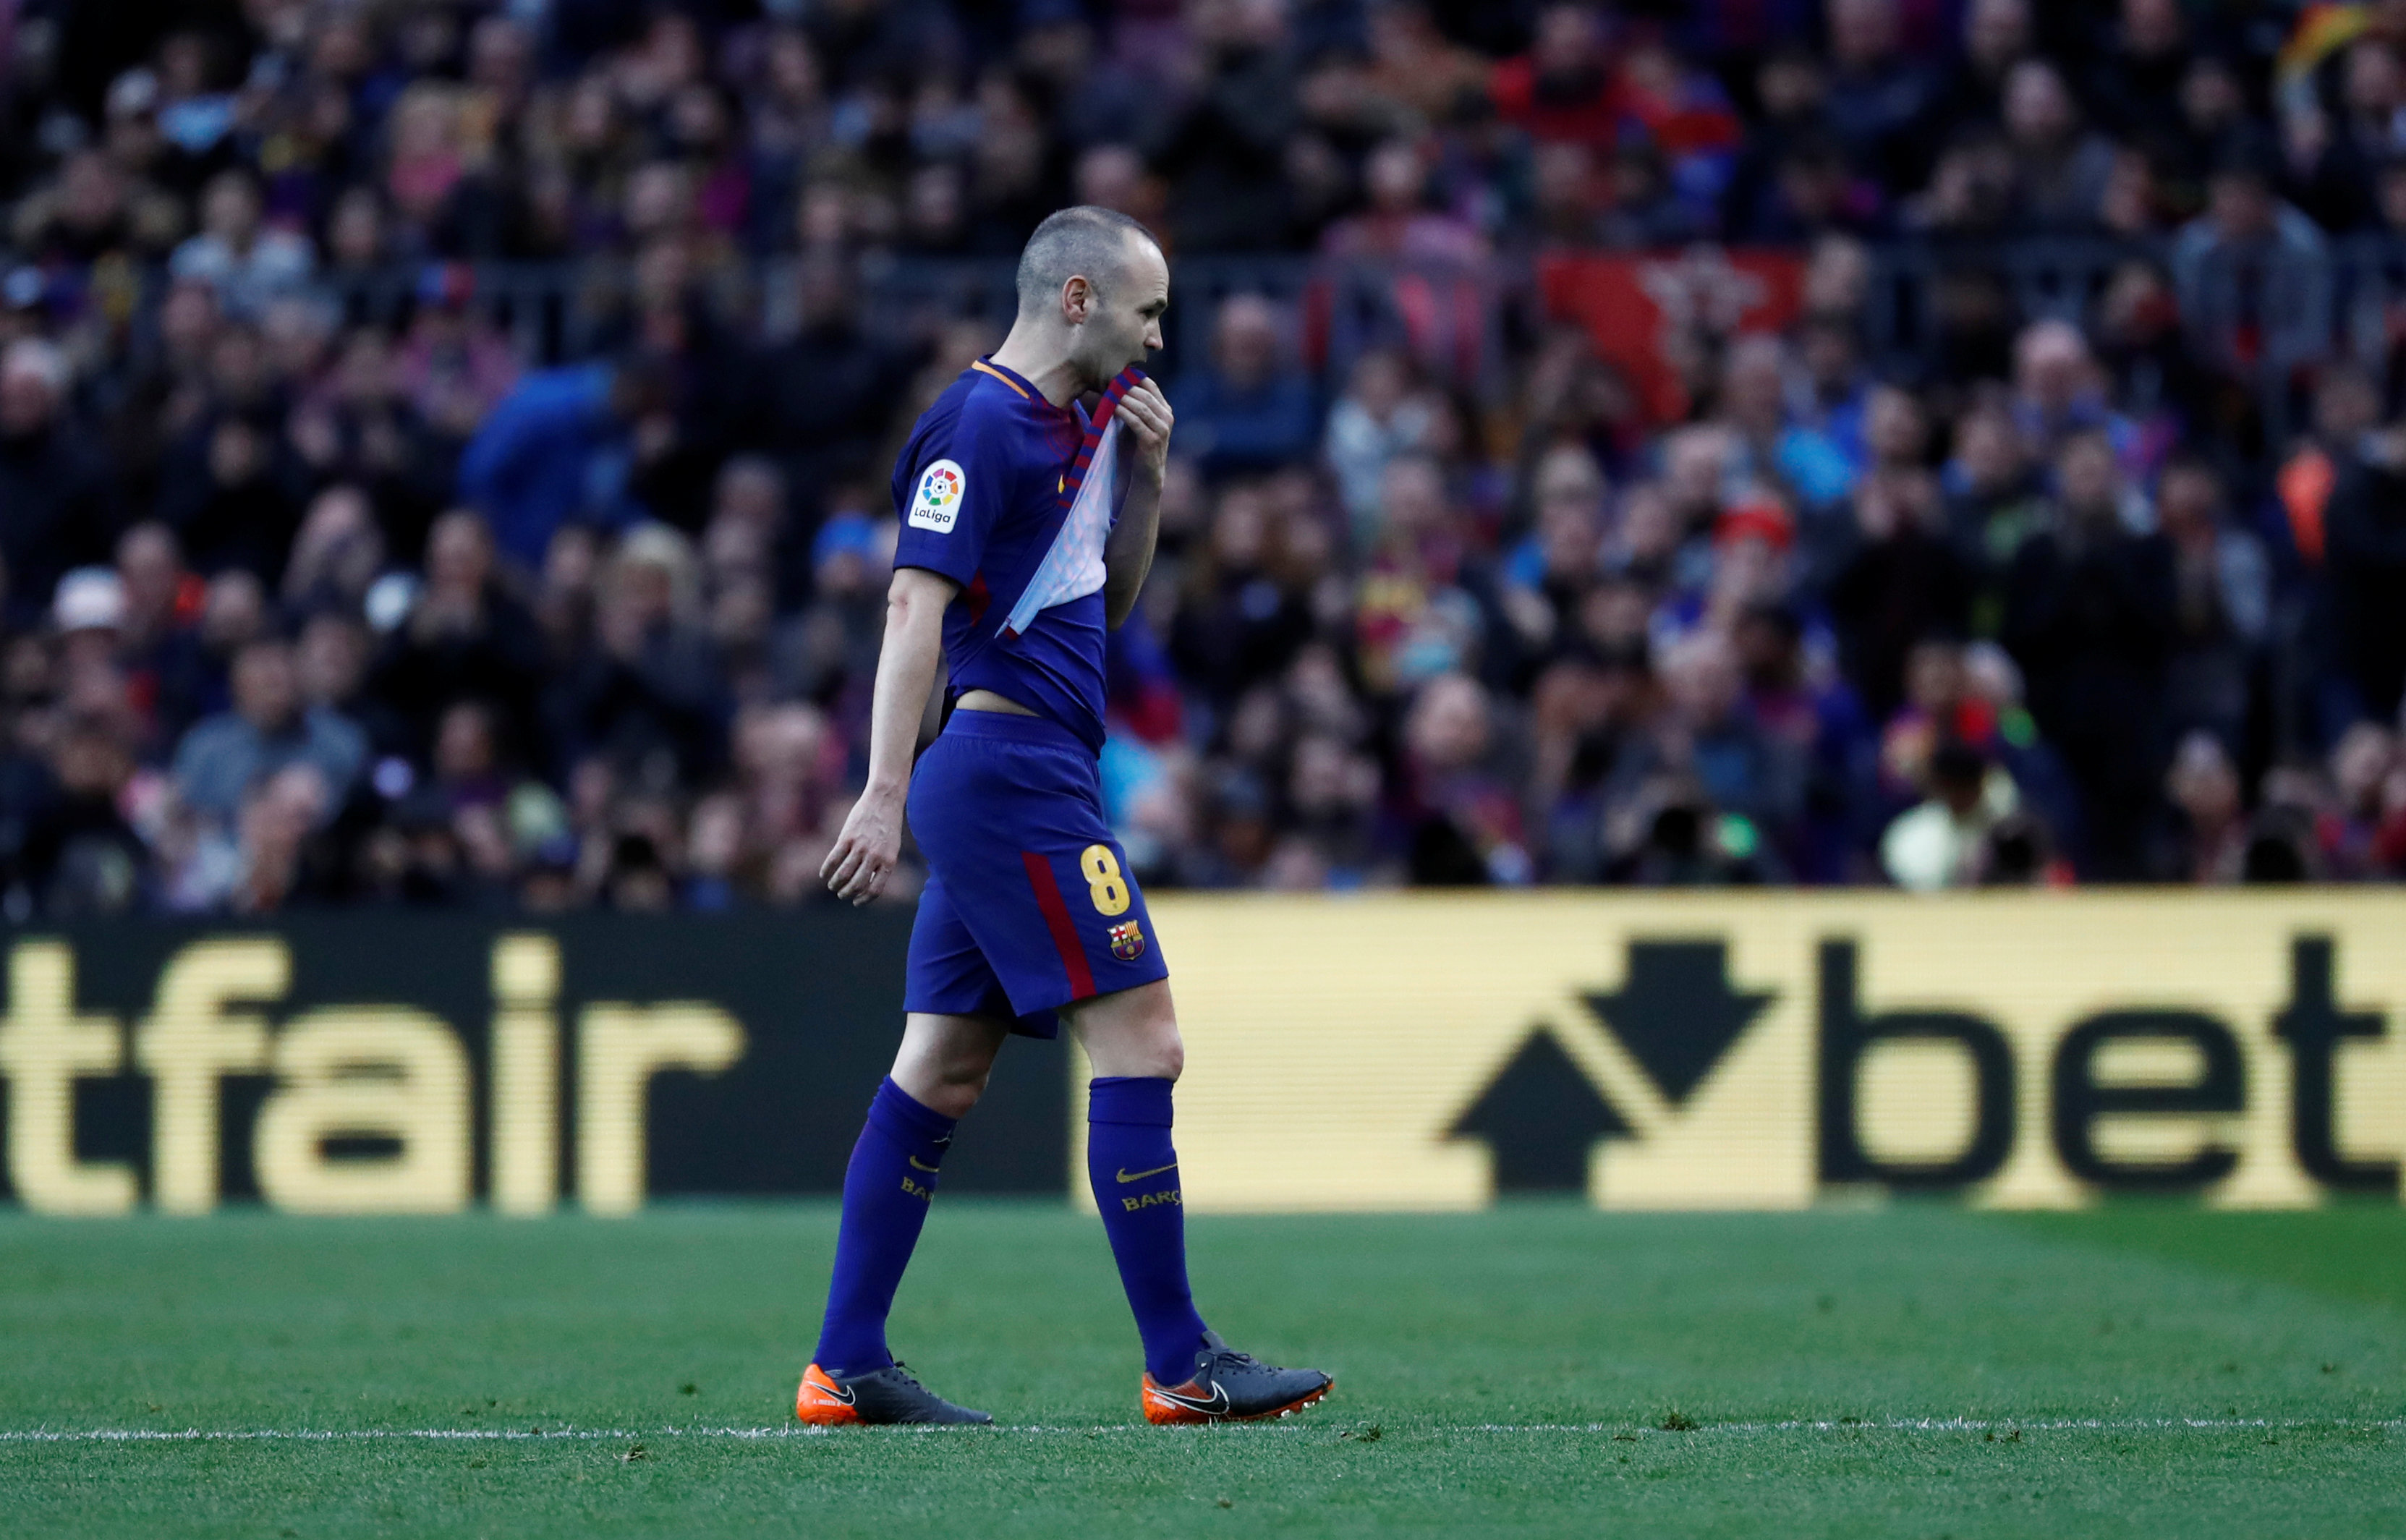 Football: Iniesta injury leaves Barca looking for new hero